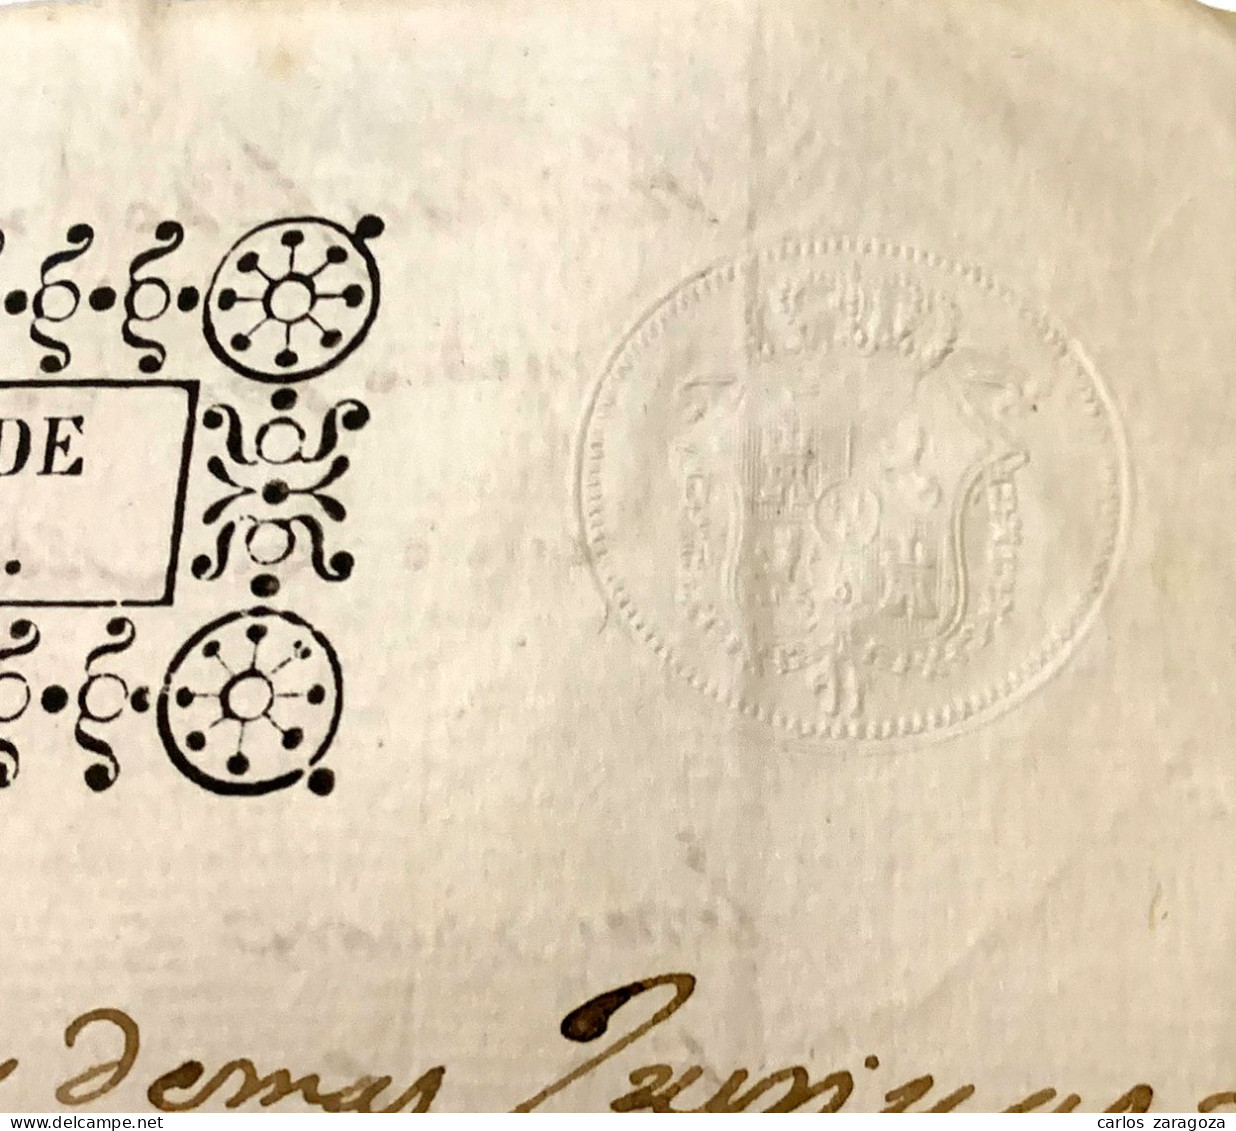 ESPAÑA 1840 — TIMBRE FISCAL, SELLOS DE 40 Ms — Pliego Completo, 4 Páginas — TIMBROLOGIA - Fiscali